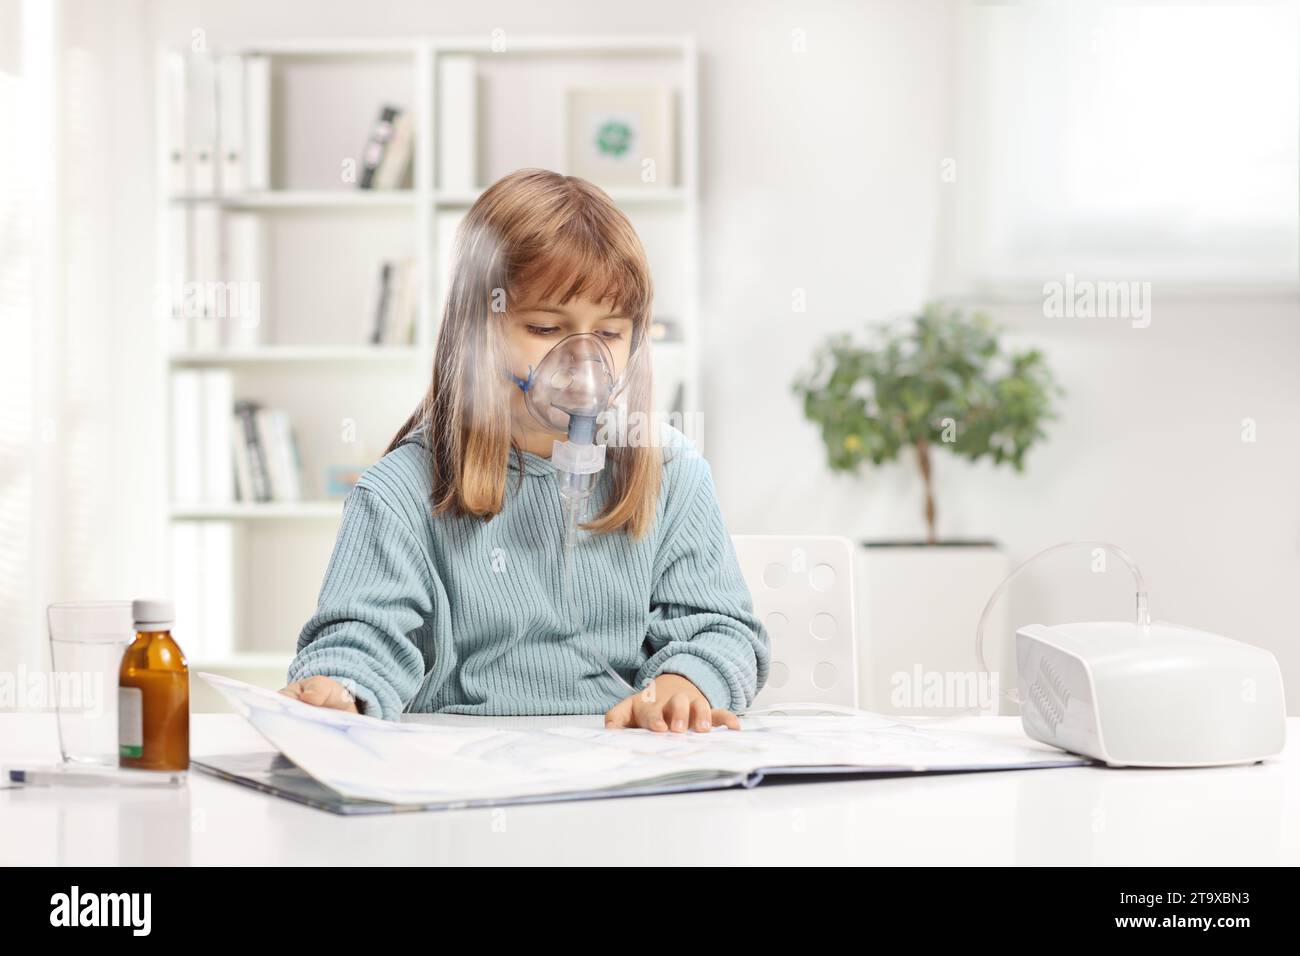 Ein kleines Mädchen liest ein Buch und benutzt zu Hause einen Vernebler mit Dampfnebel Stockfoto